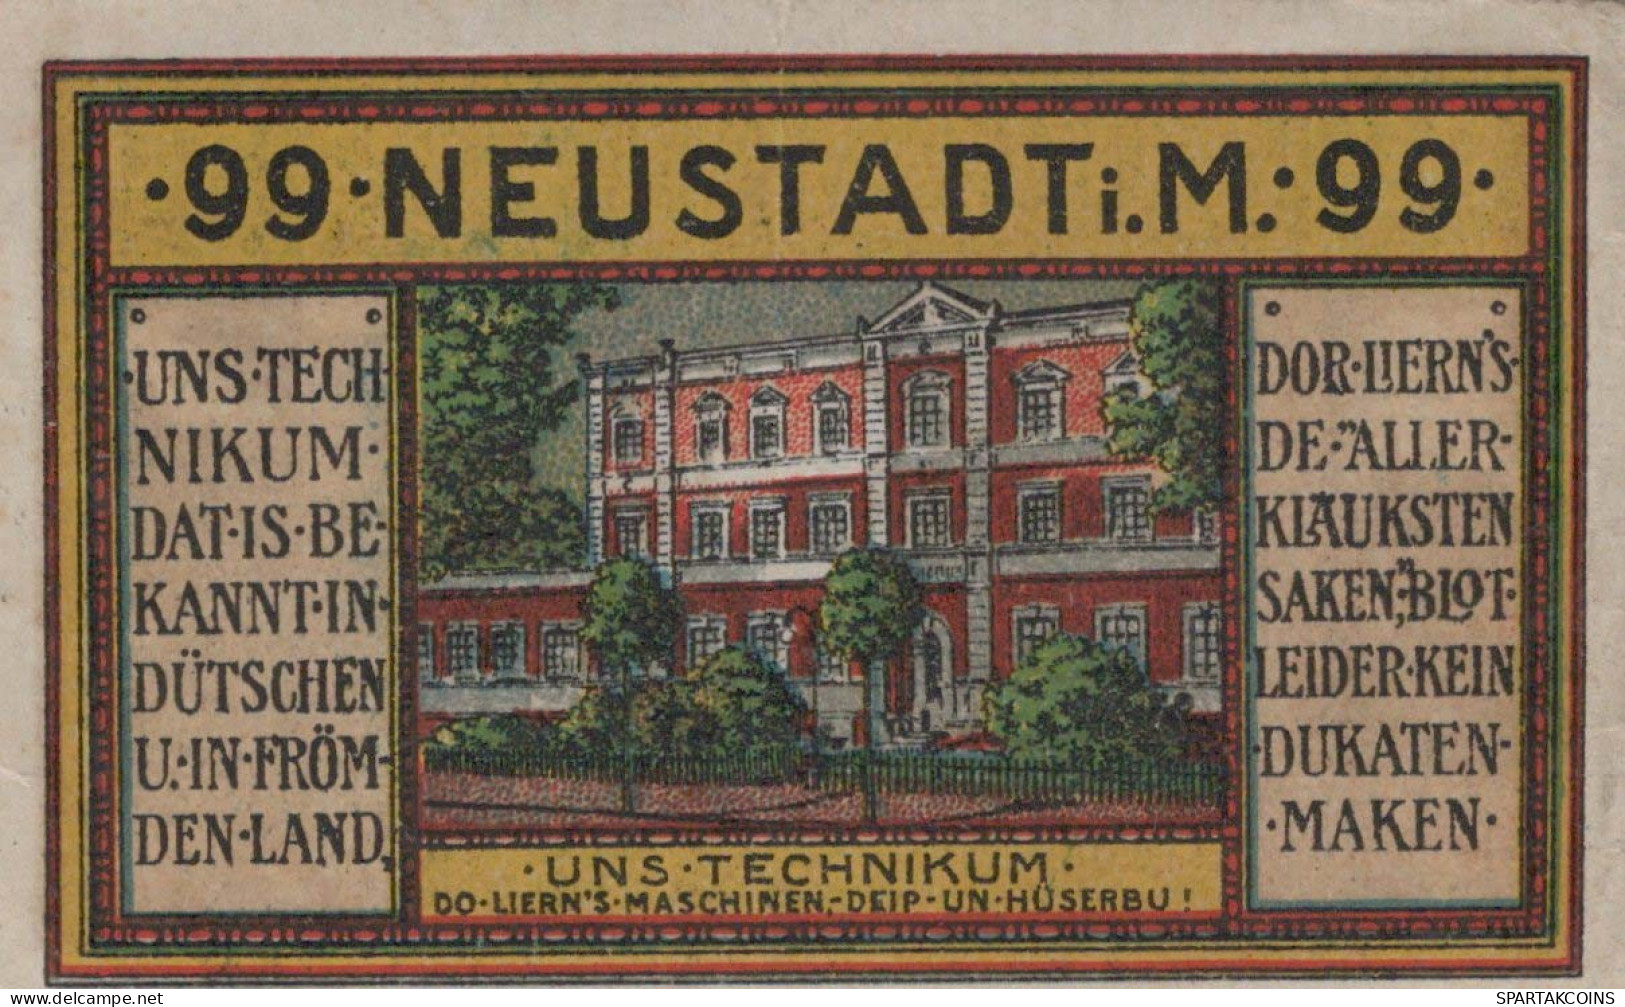 99 PFENNIG 1921 Stadt NEUSTADT MECKLENBURG-SCHWERIN UNC DEUTSCHLAND #PH258 - [11] Emissioni Locali